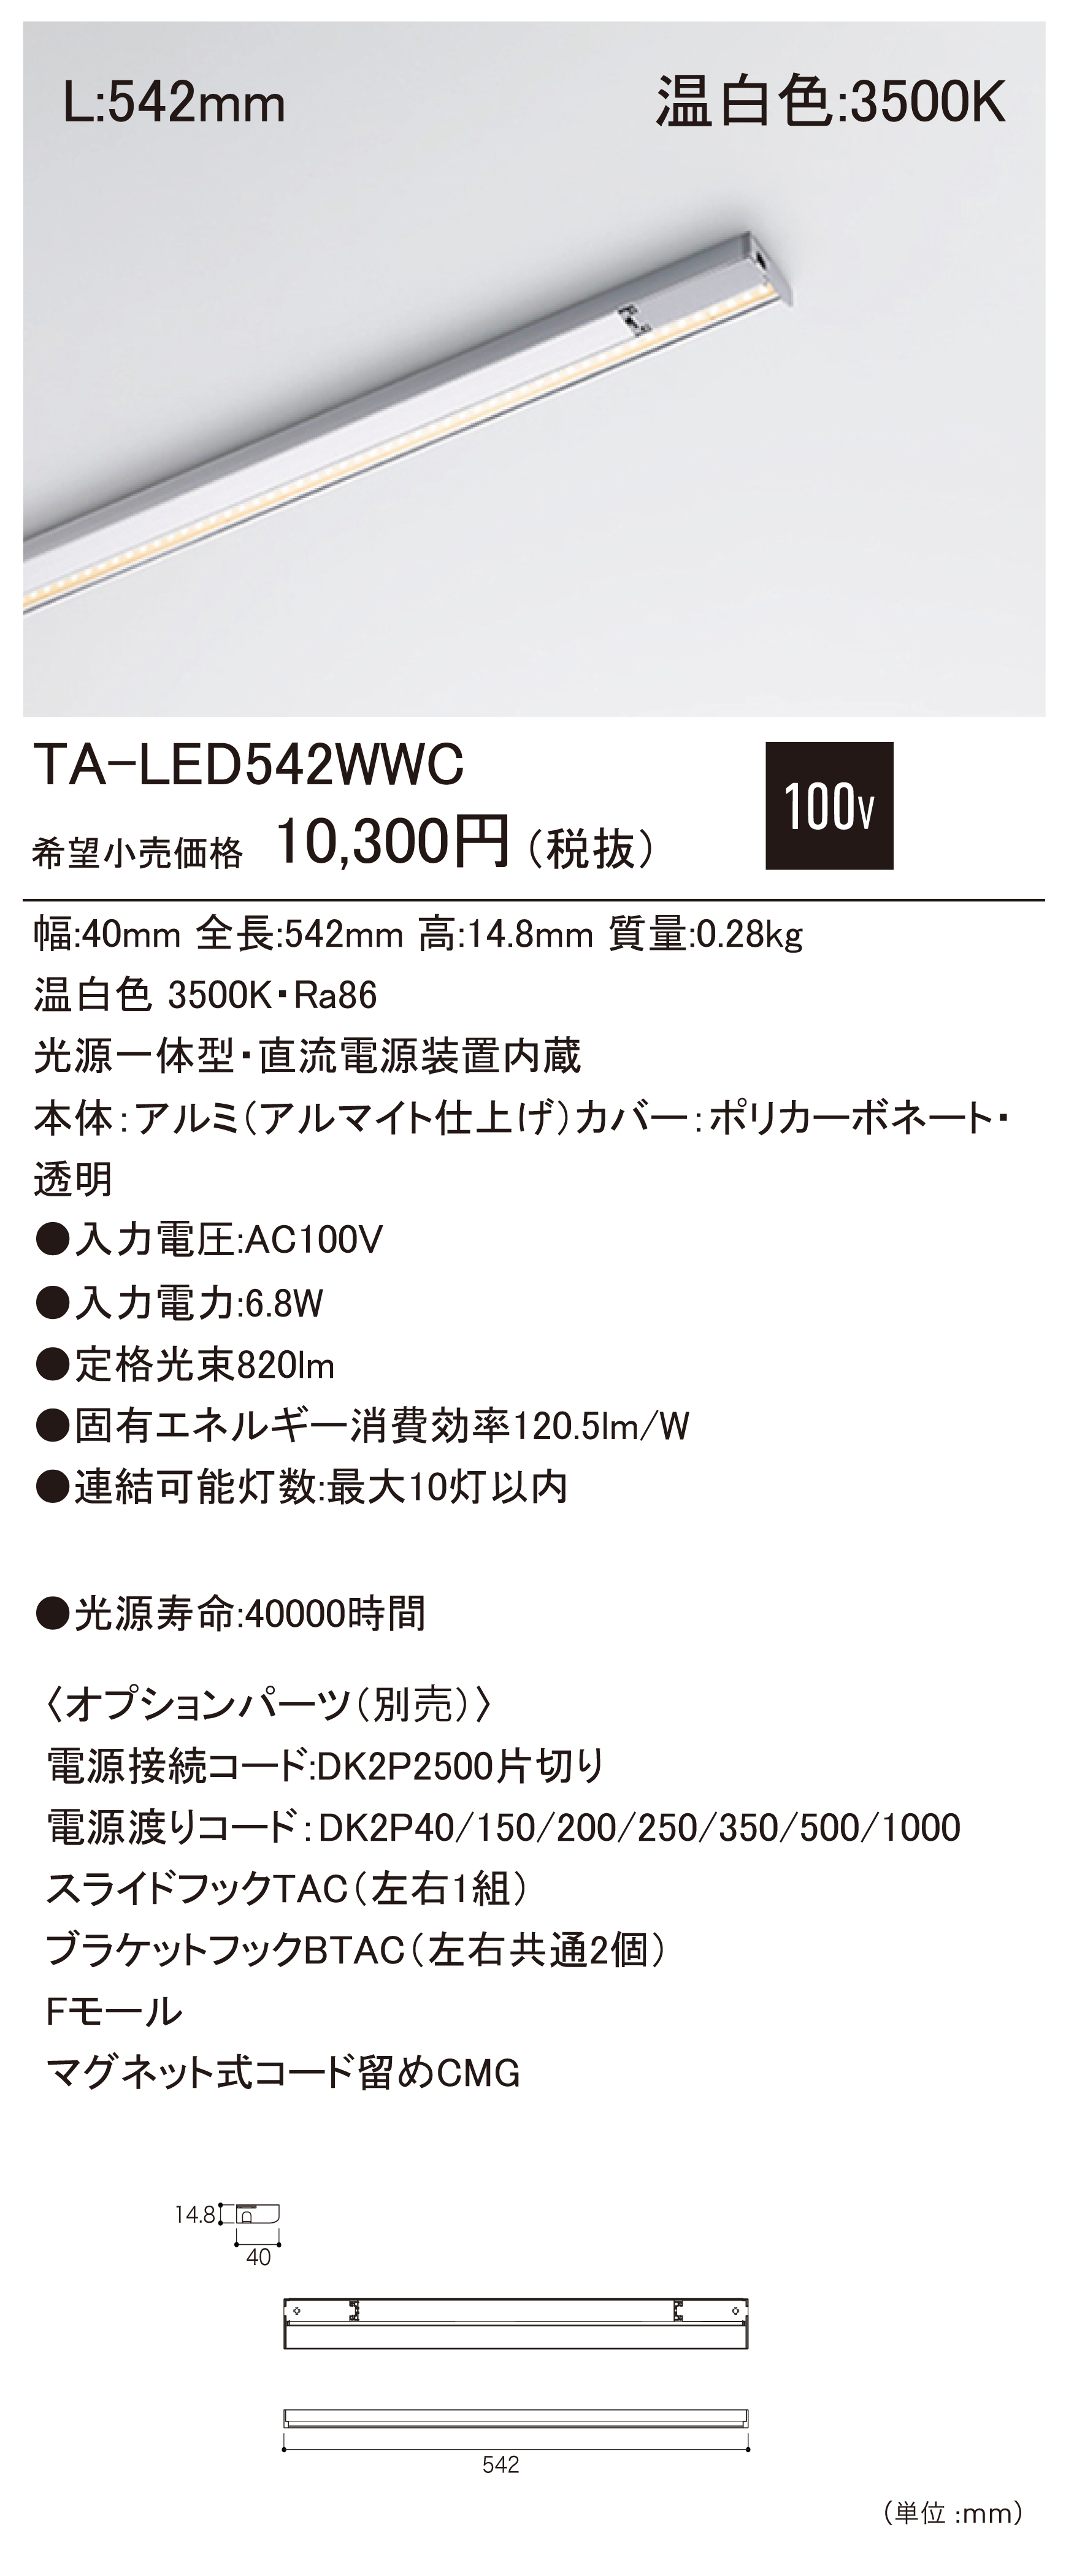 TA-LED C たなライト ダウンロード | DNライティング株式会社